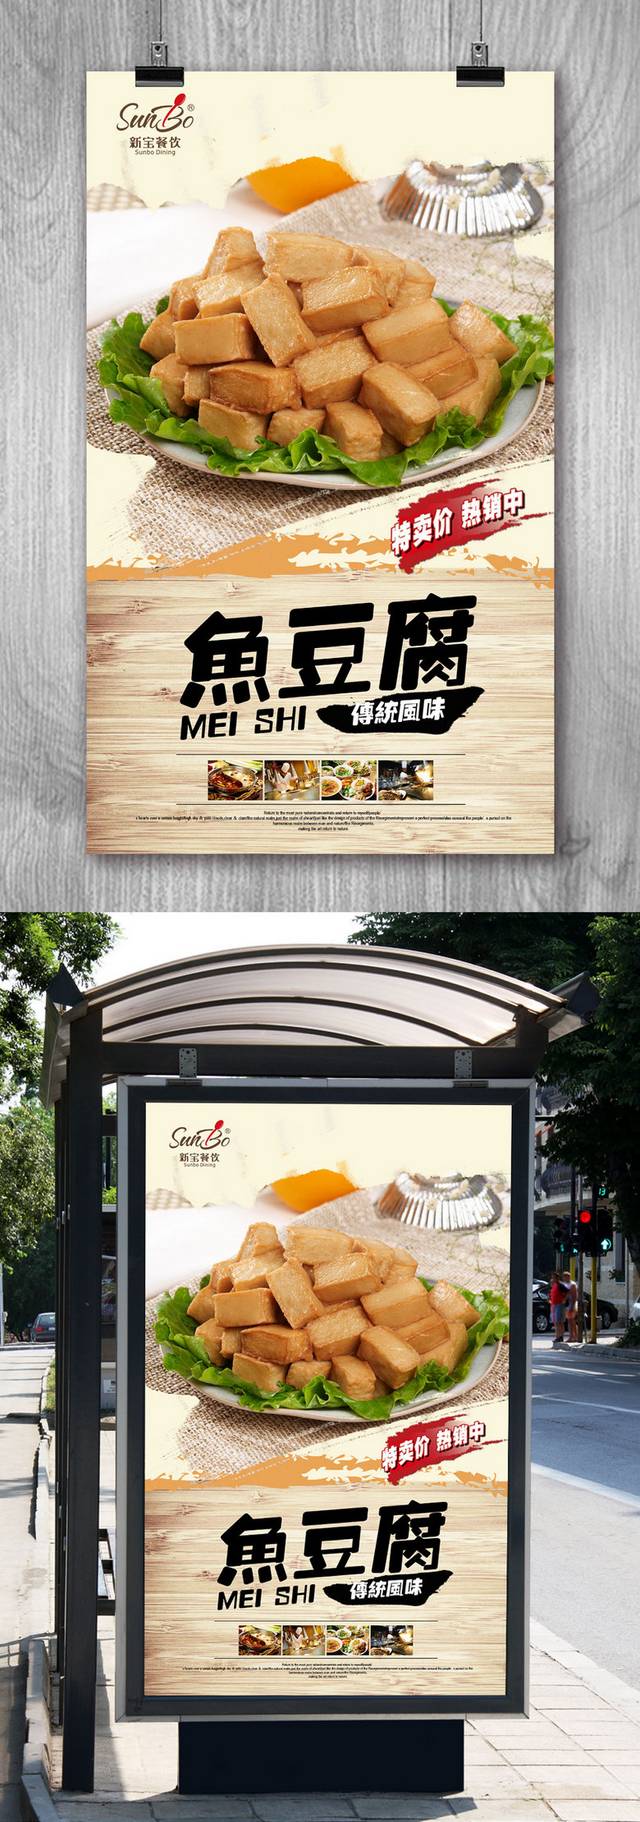 鱼豆腐经典海报设计